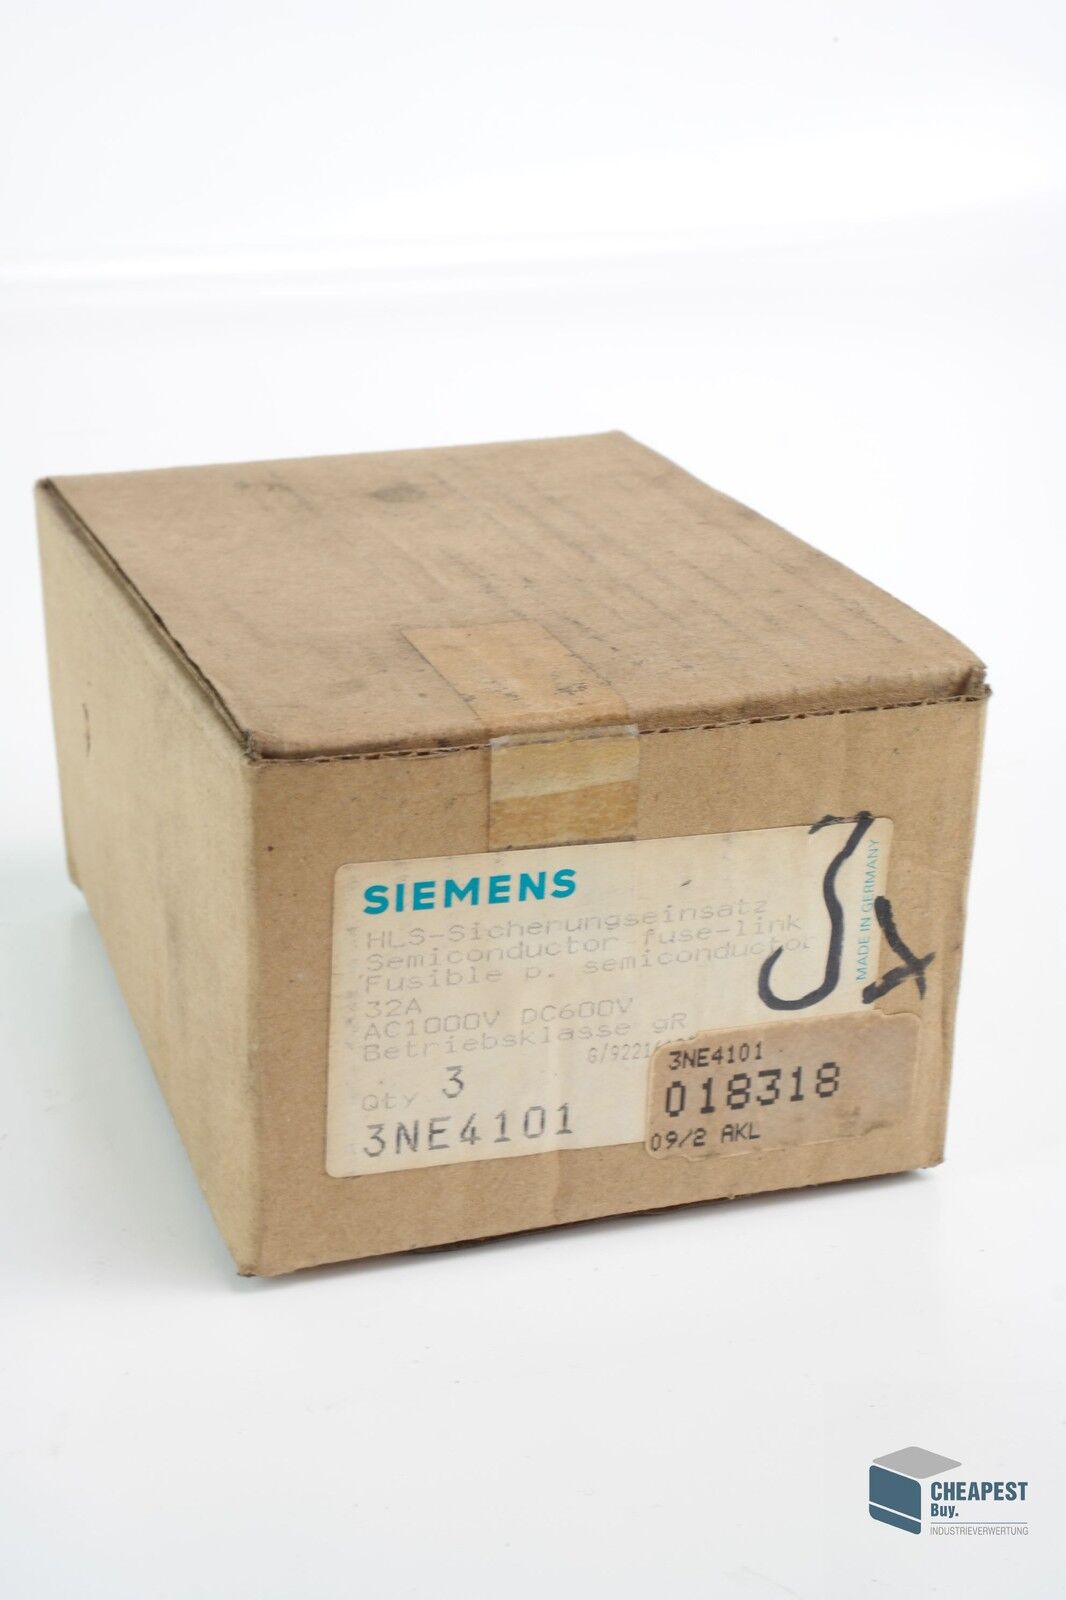 3x Siemens 3NE4101 Sitor Hls-Sicherungseinsatz 3NE4 101 Semiconductor Fuse-Link